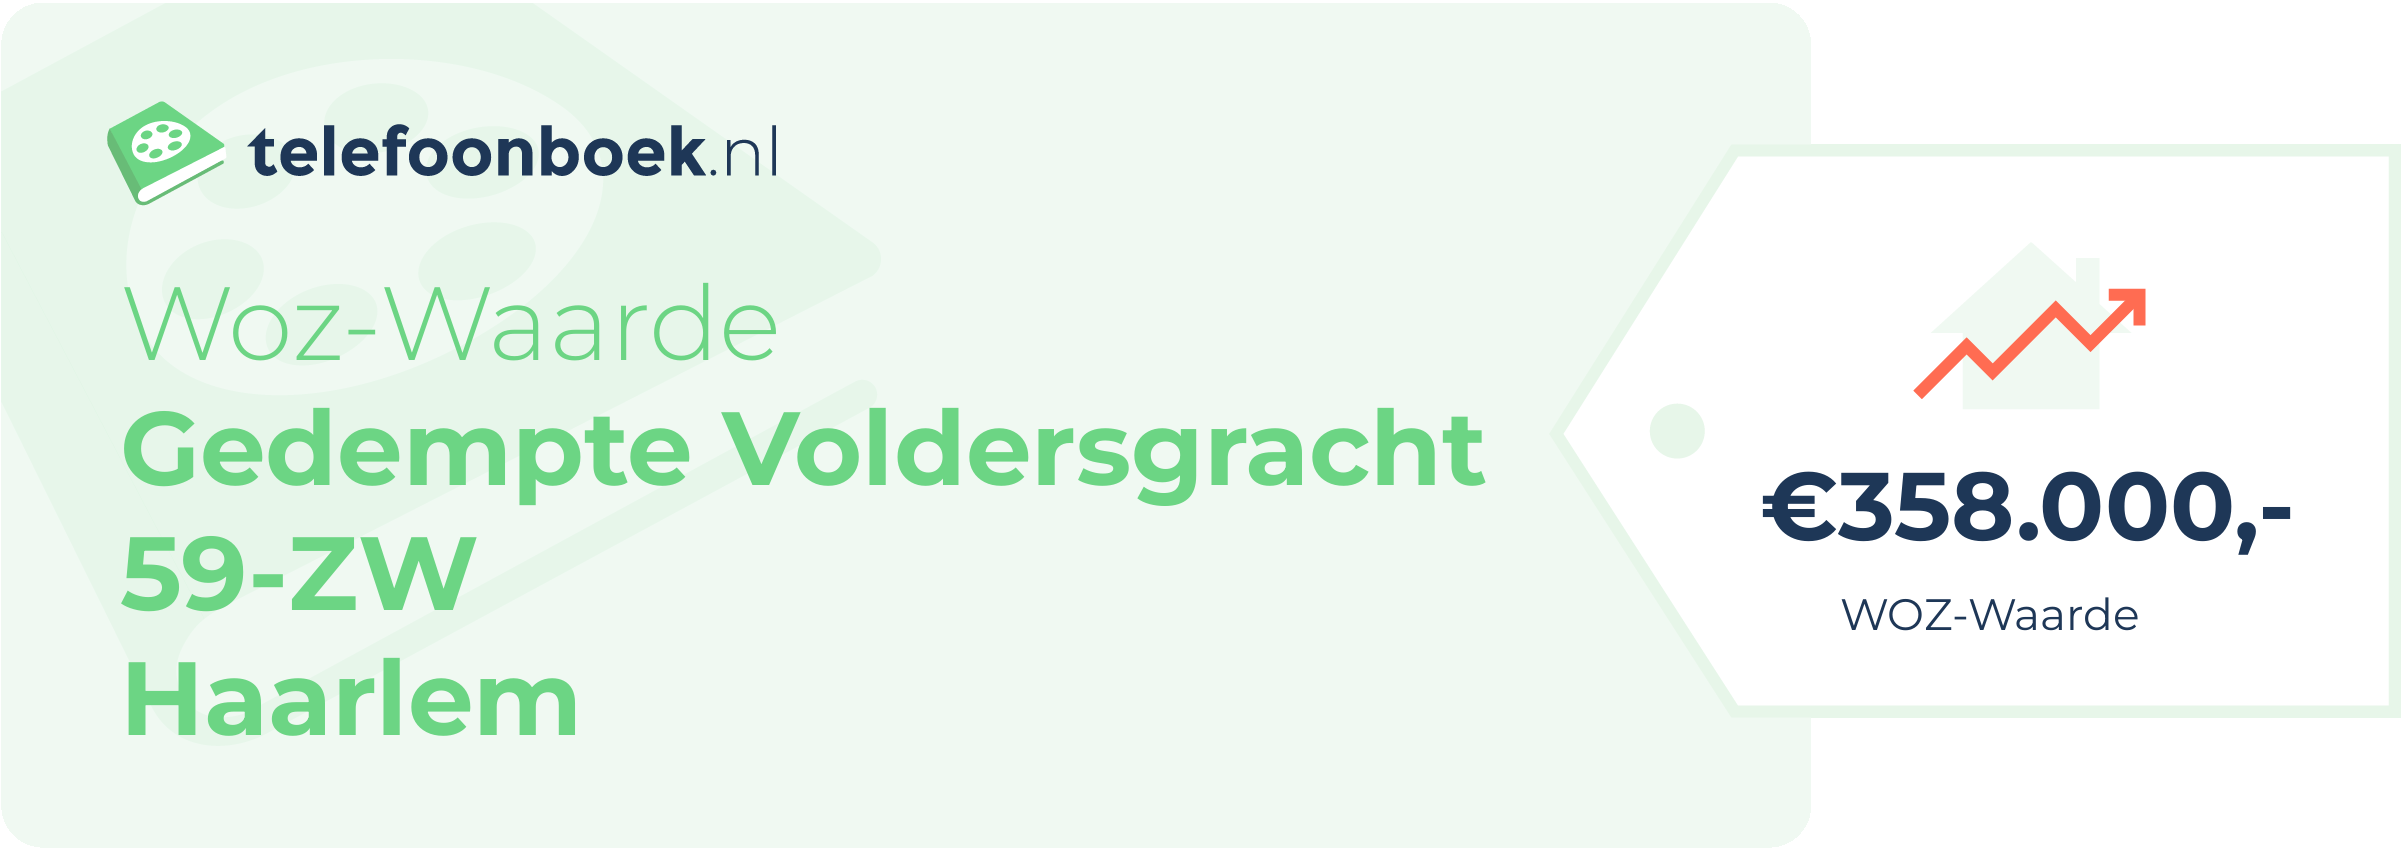 WOZ-waarde Gedempte Voldersgracht 59-ZW Haarlem